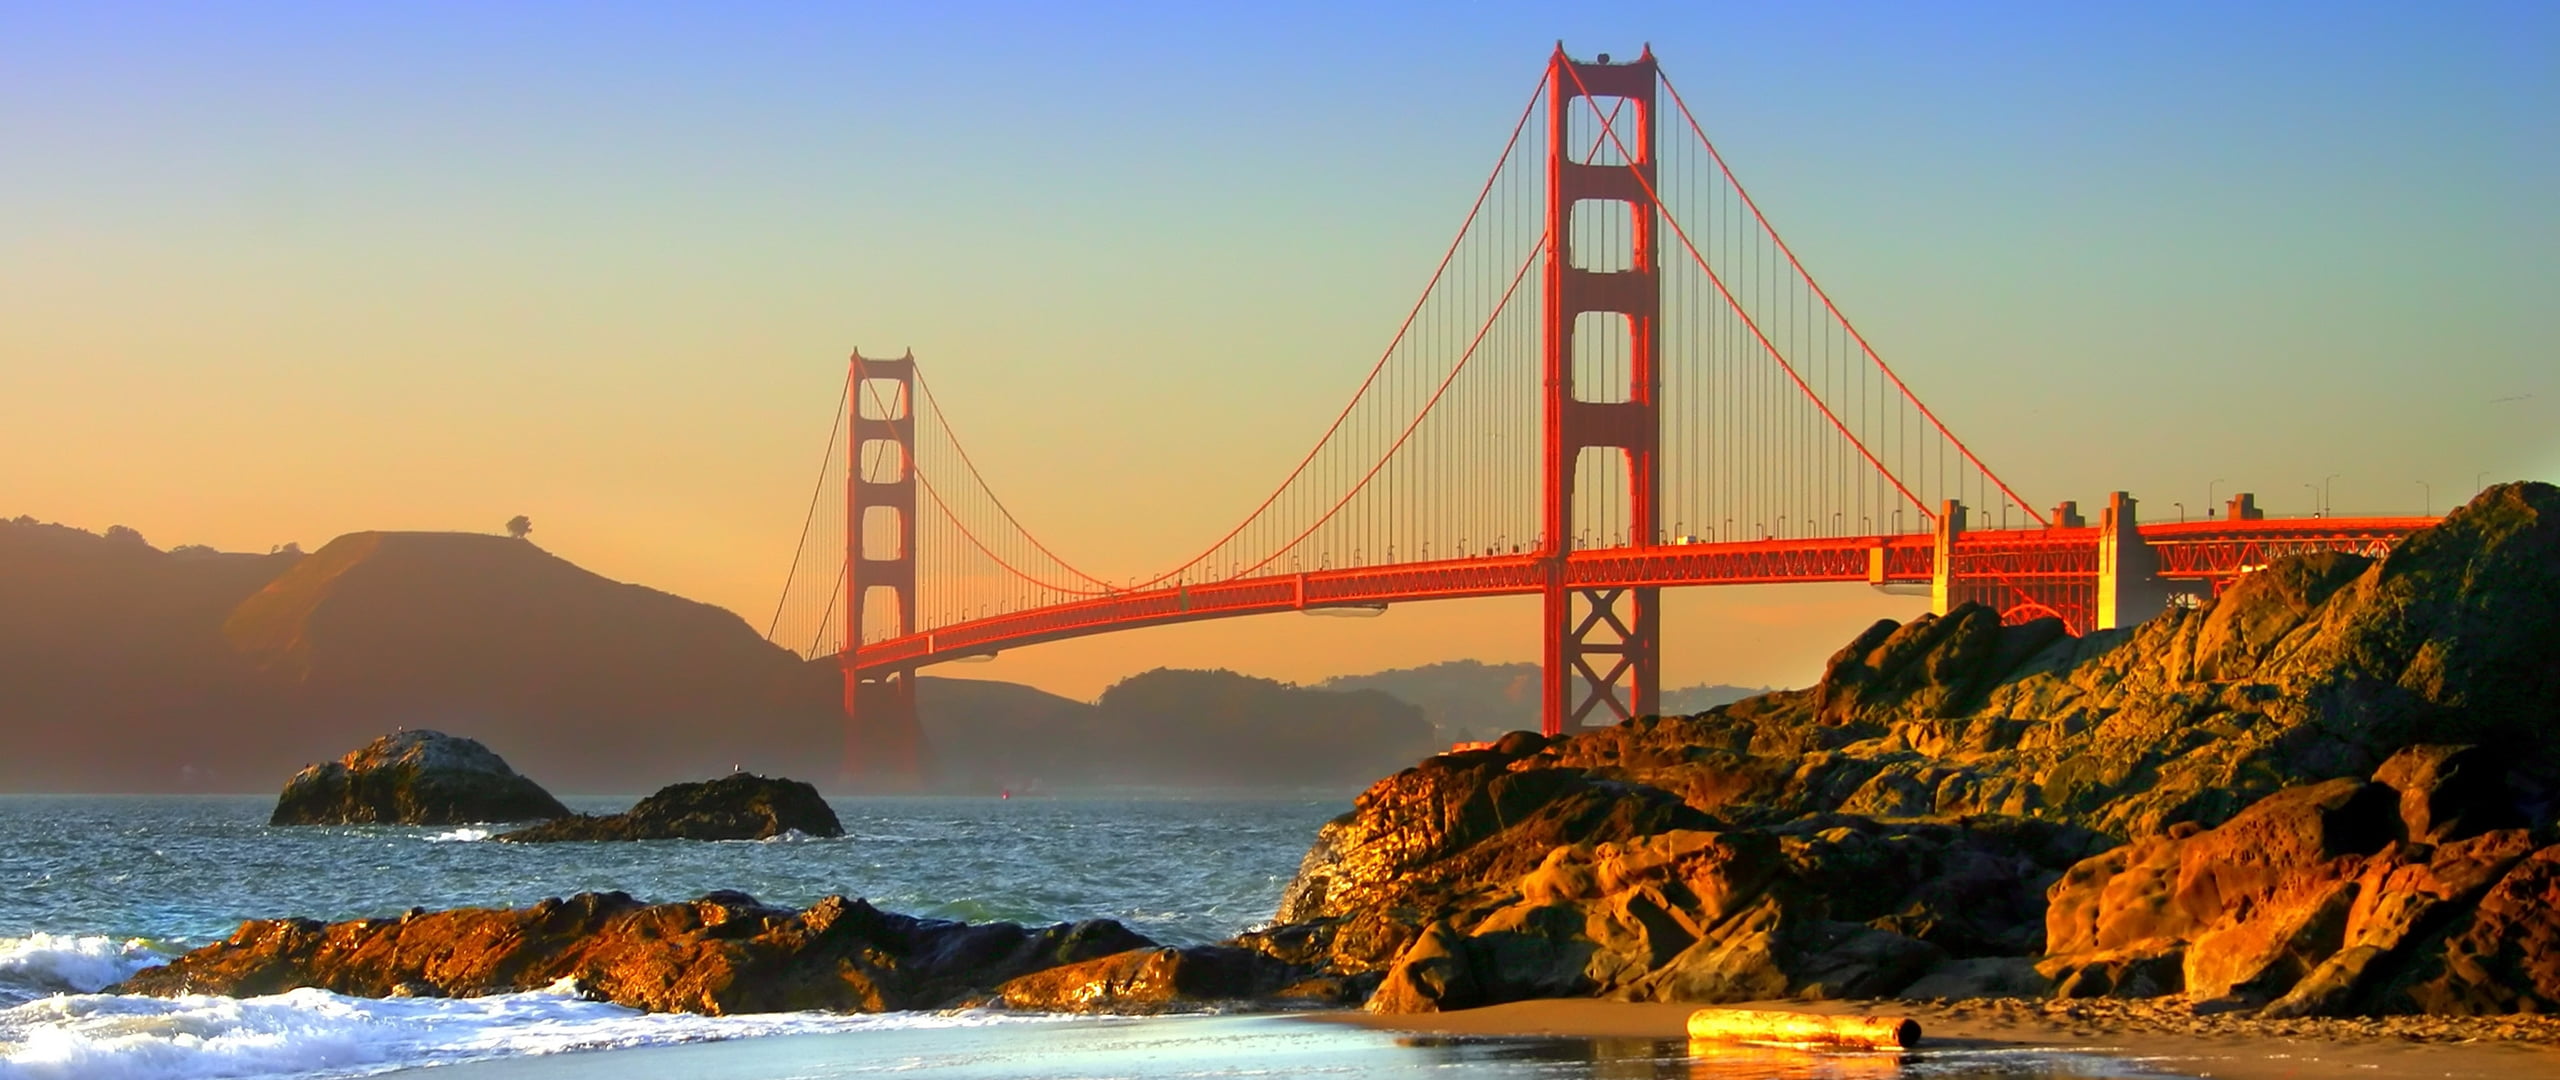 Golden Gate Bridge, San Francisco, Golden Gate Bridge, San Francisco ...